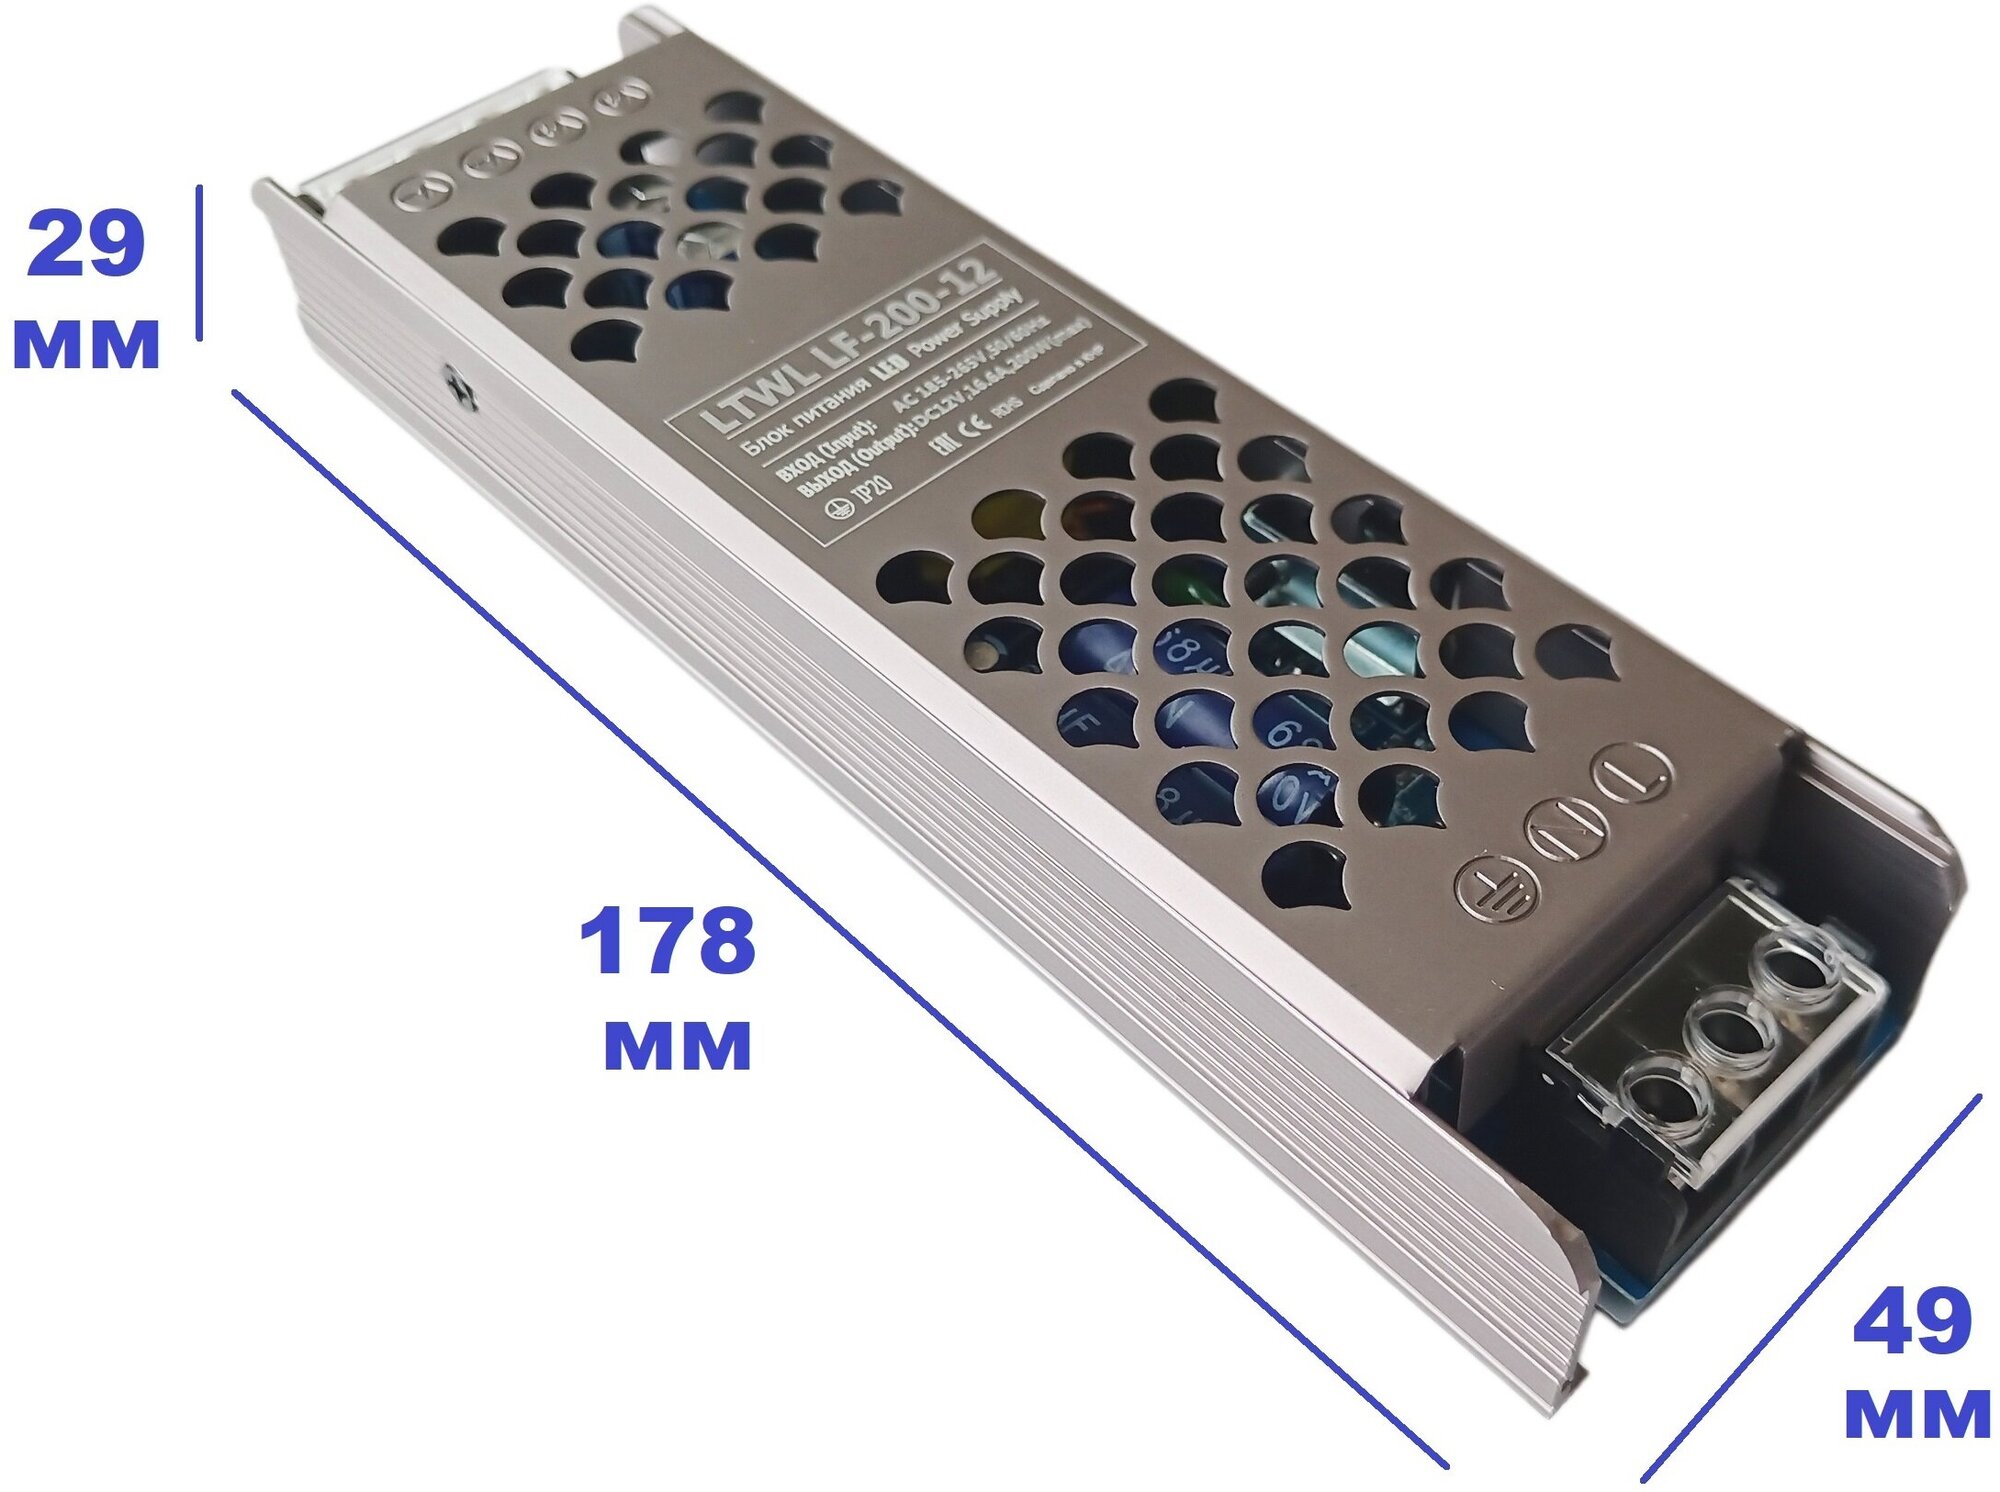 Блок питания 12V, мощность 200Вт - LTWL LF-200-12 - для светодиодной ленты, LED ламп. Компактные размеры: 178х49х29 мм, надежная конструкция - фотография № 1